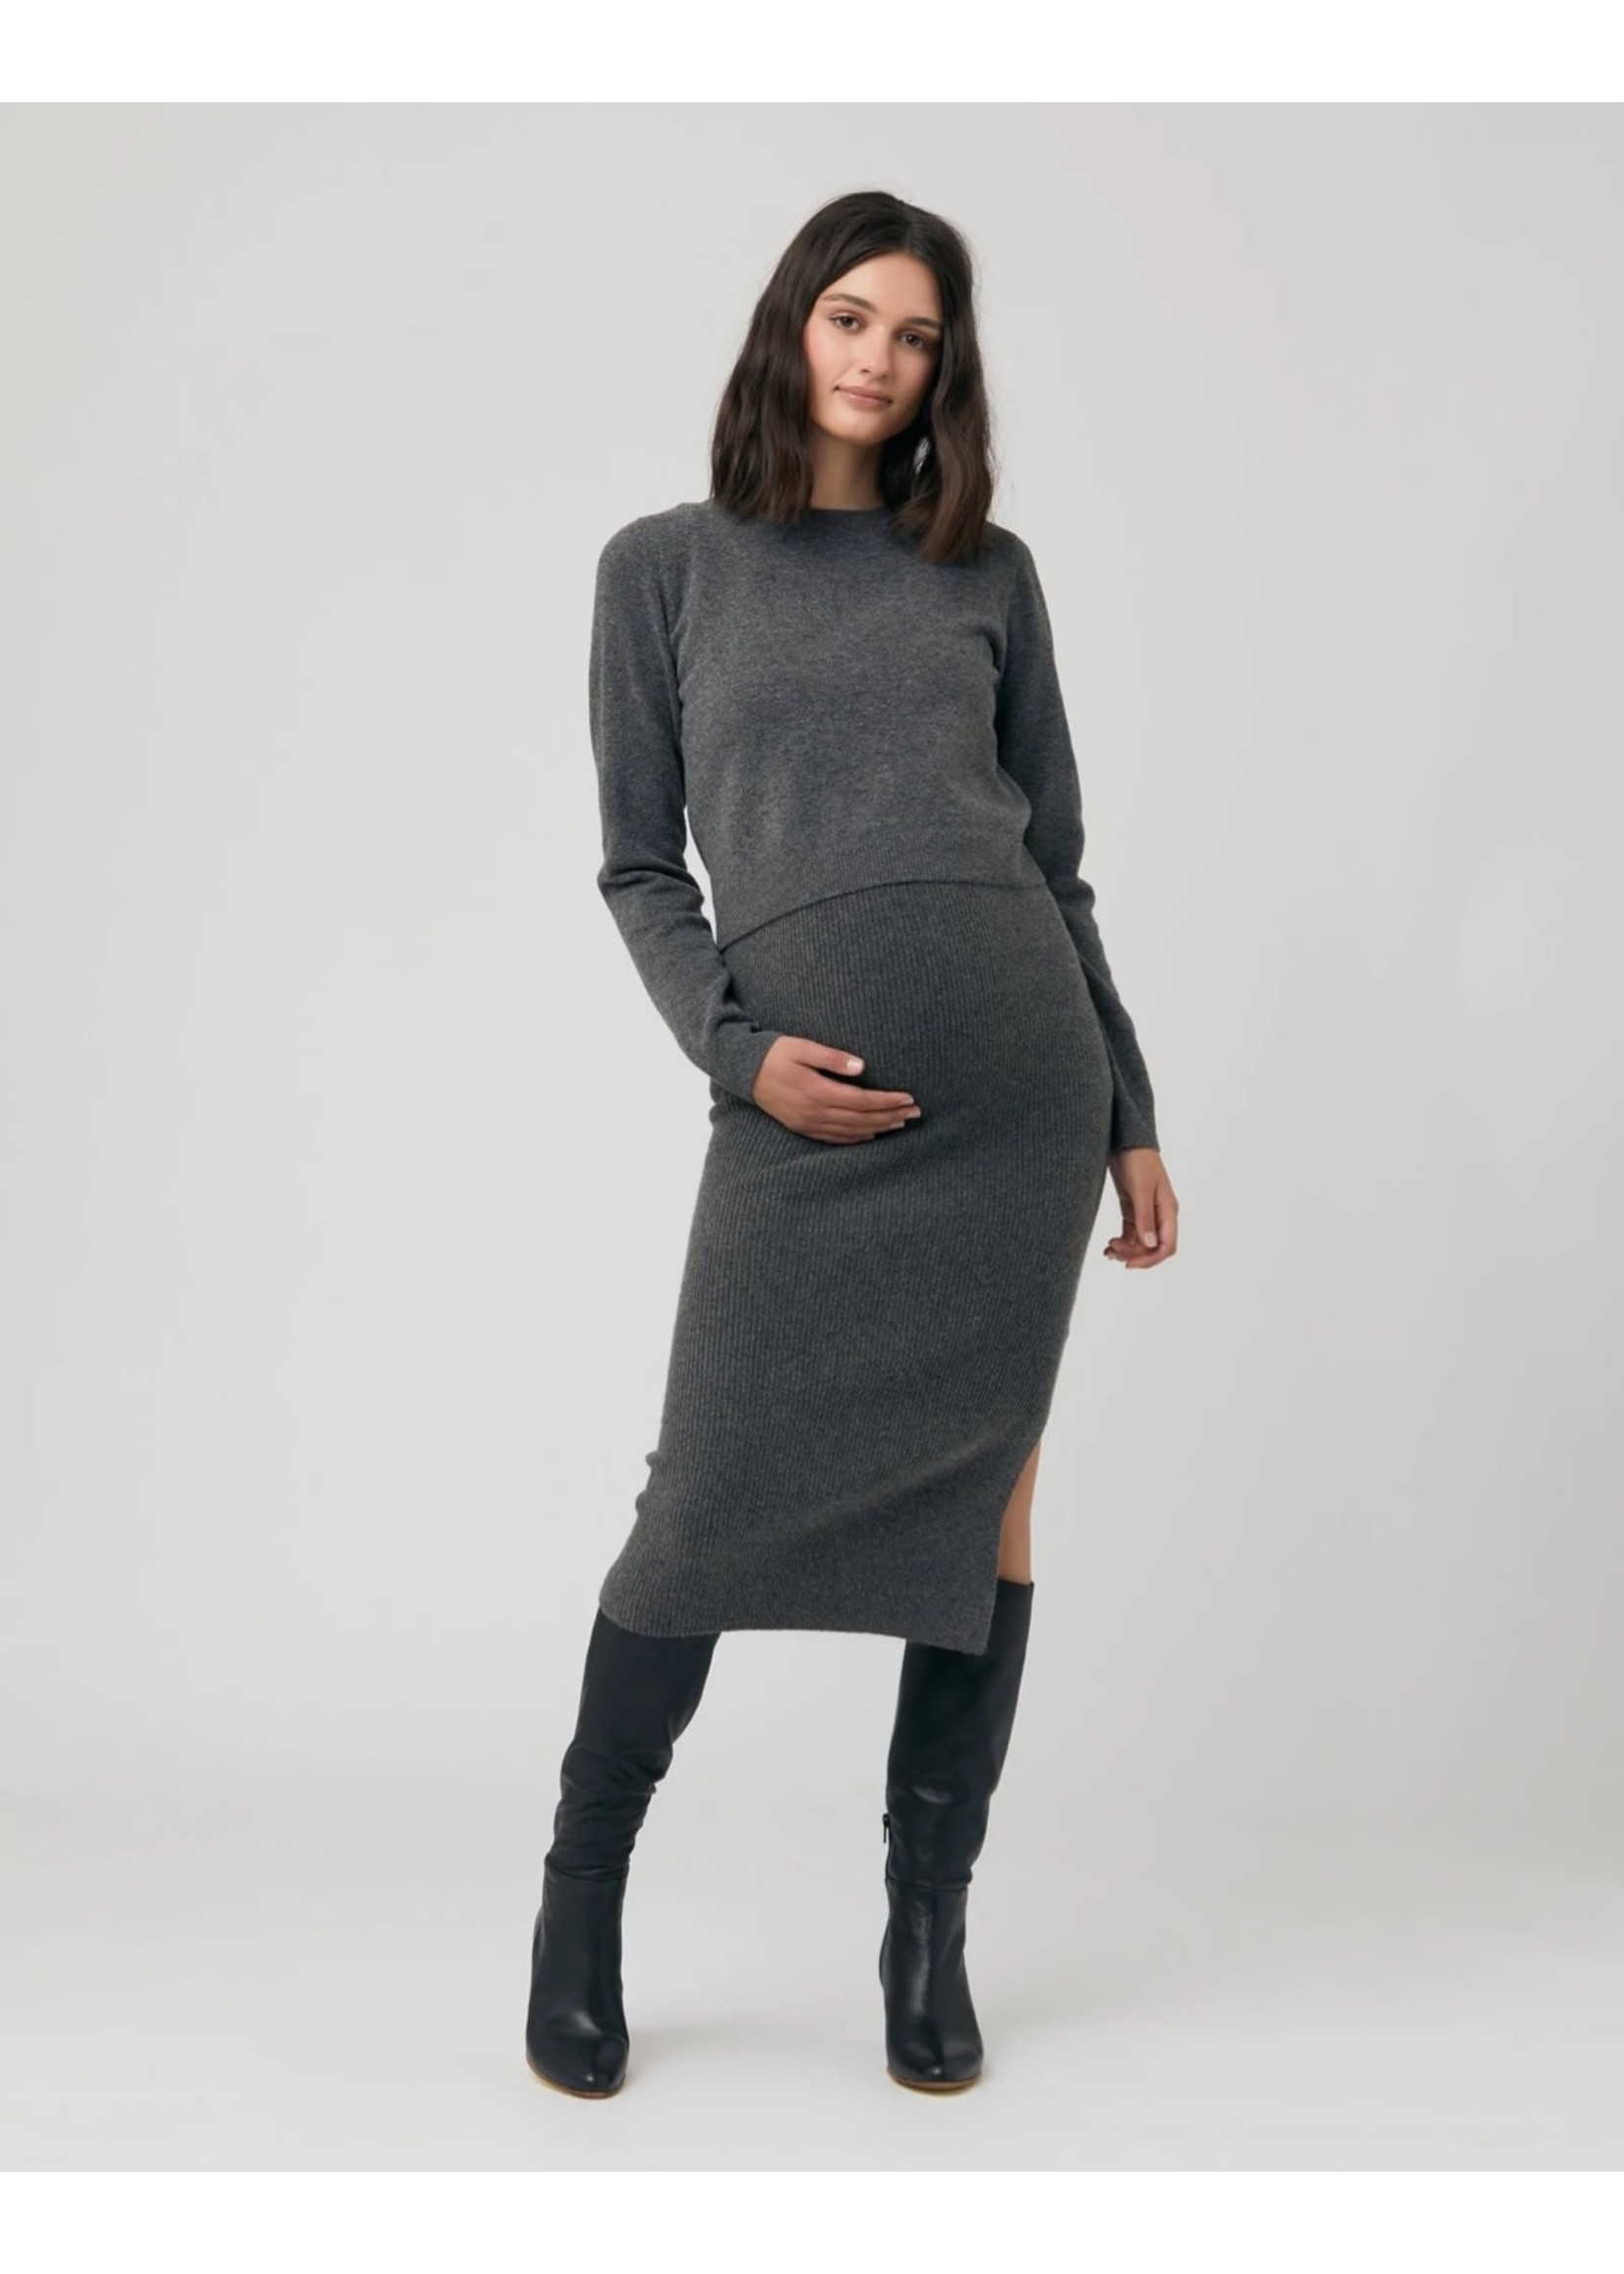 Ripe Maternity Ripe Maternity, Dani Knit Skirt || Charcoal Marle